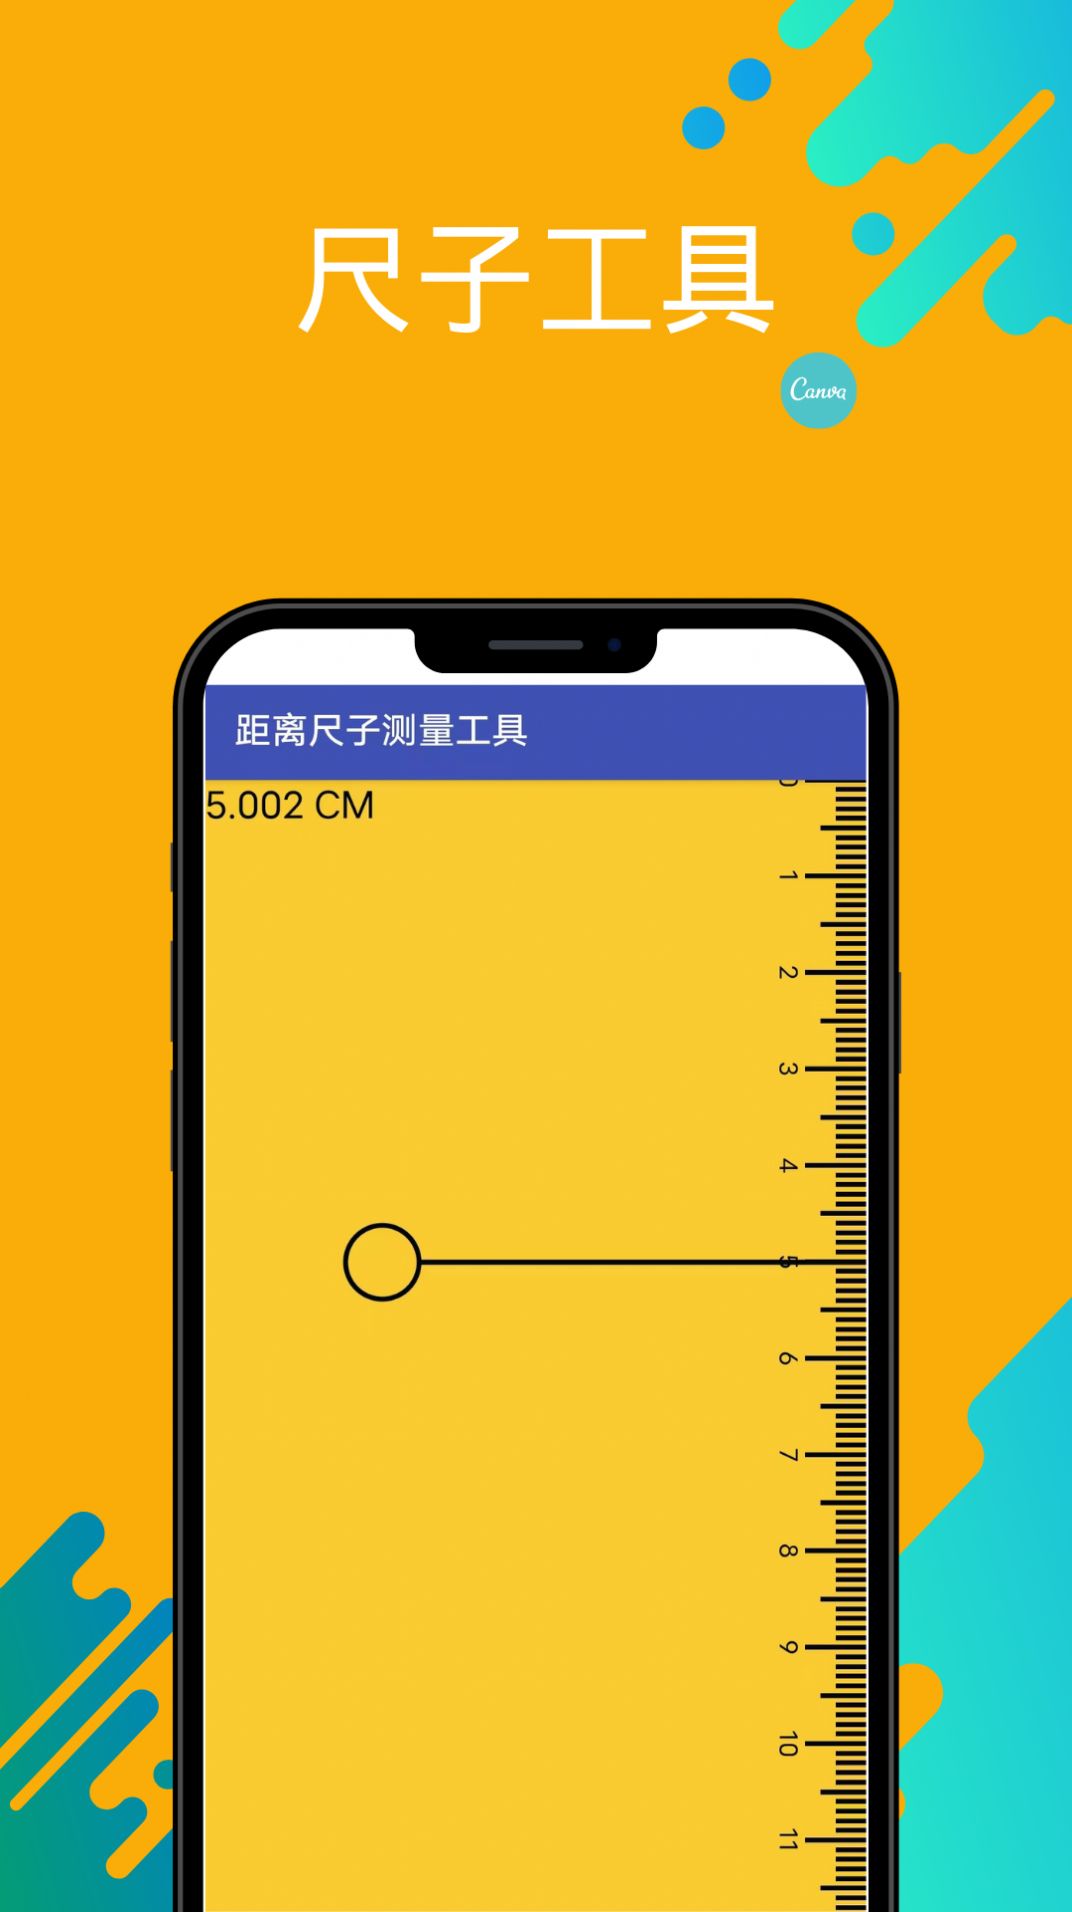 英曦距离尺子测量工具app手机版图片1